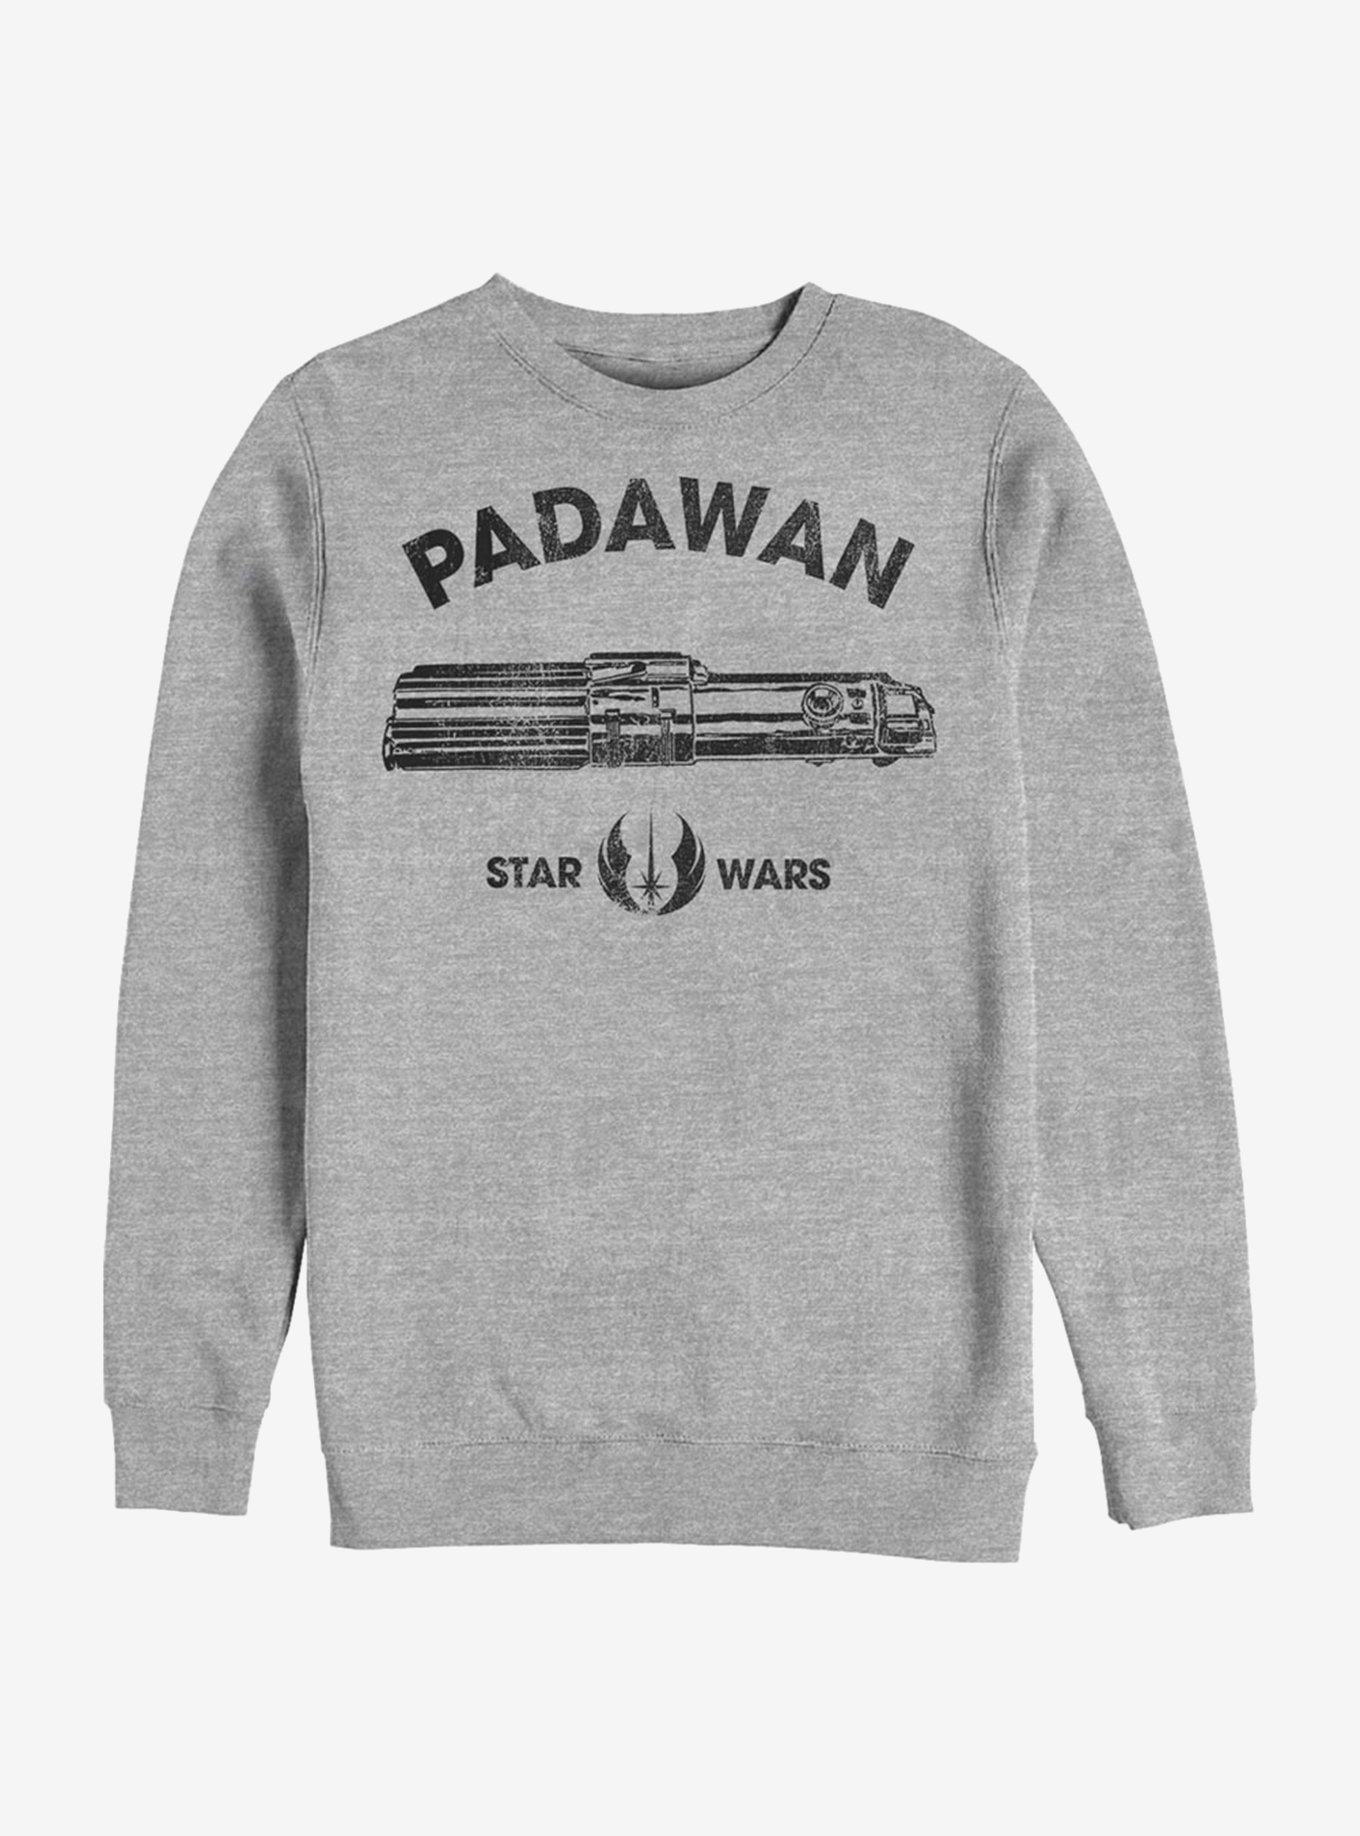 Star Wars Padawan Sweatshirt, , hi-res